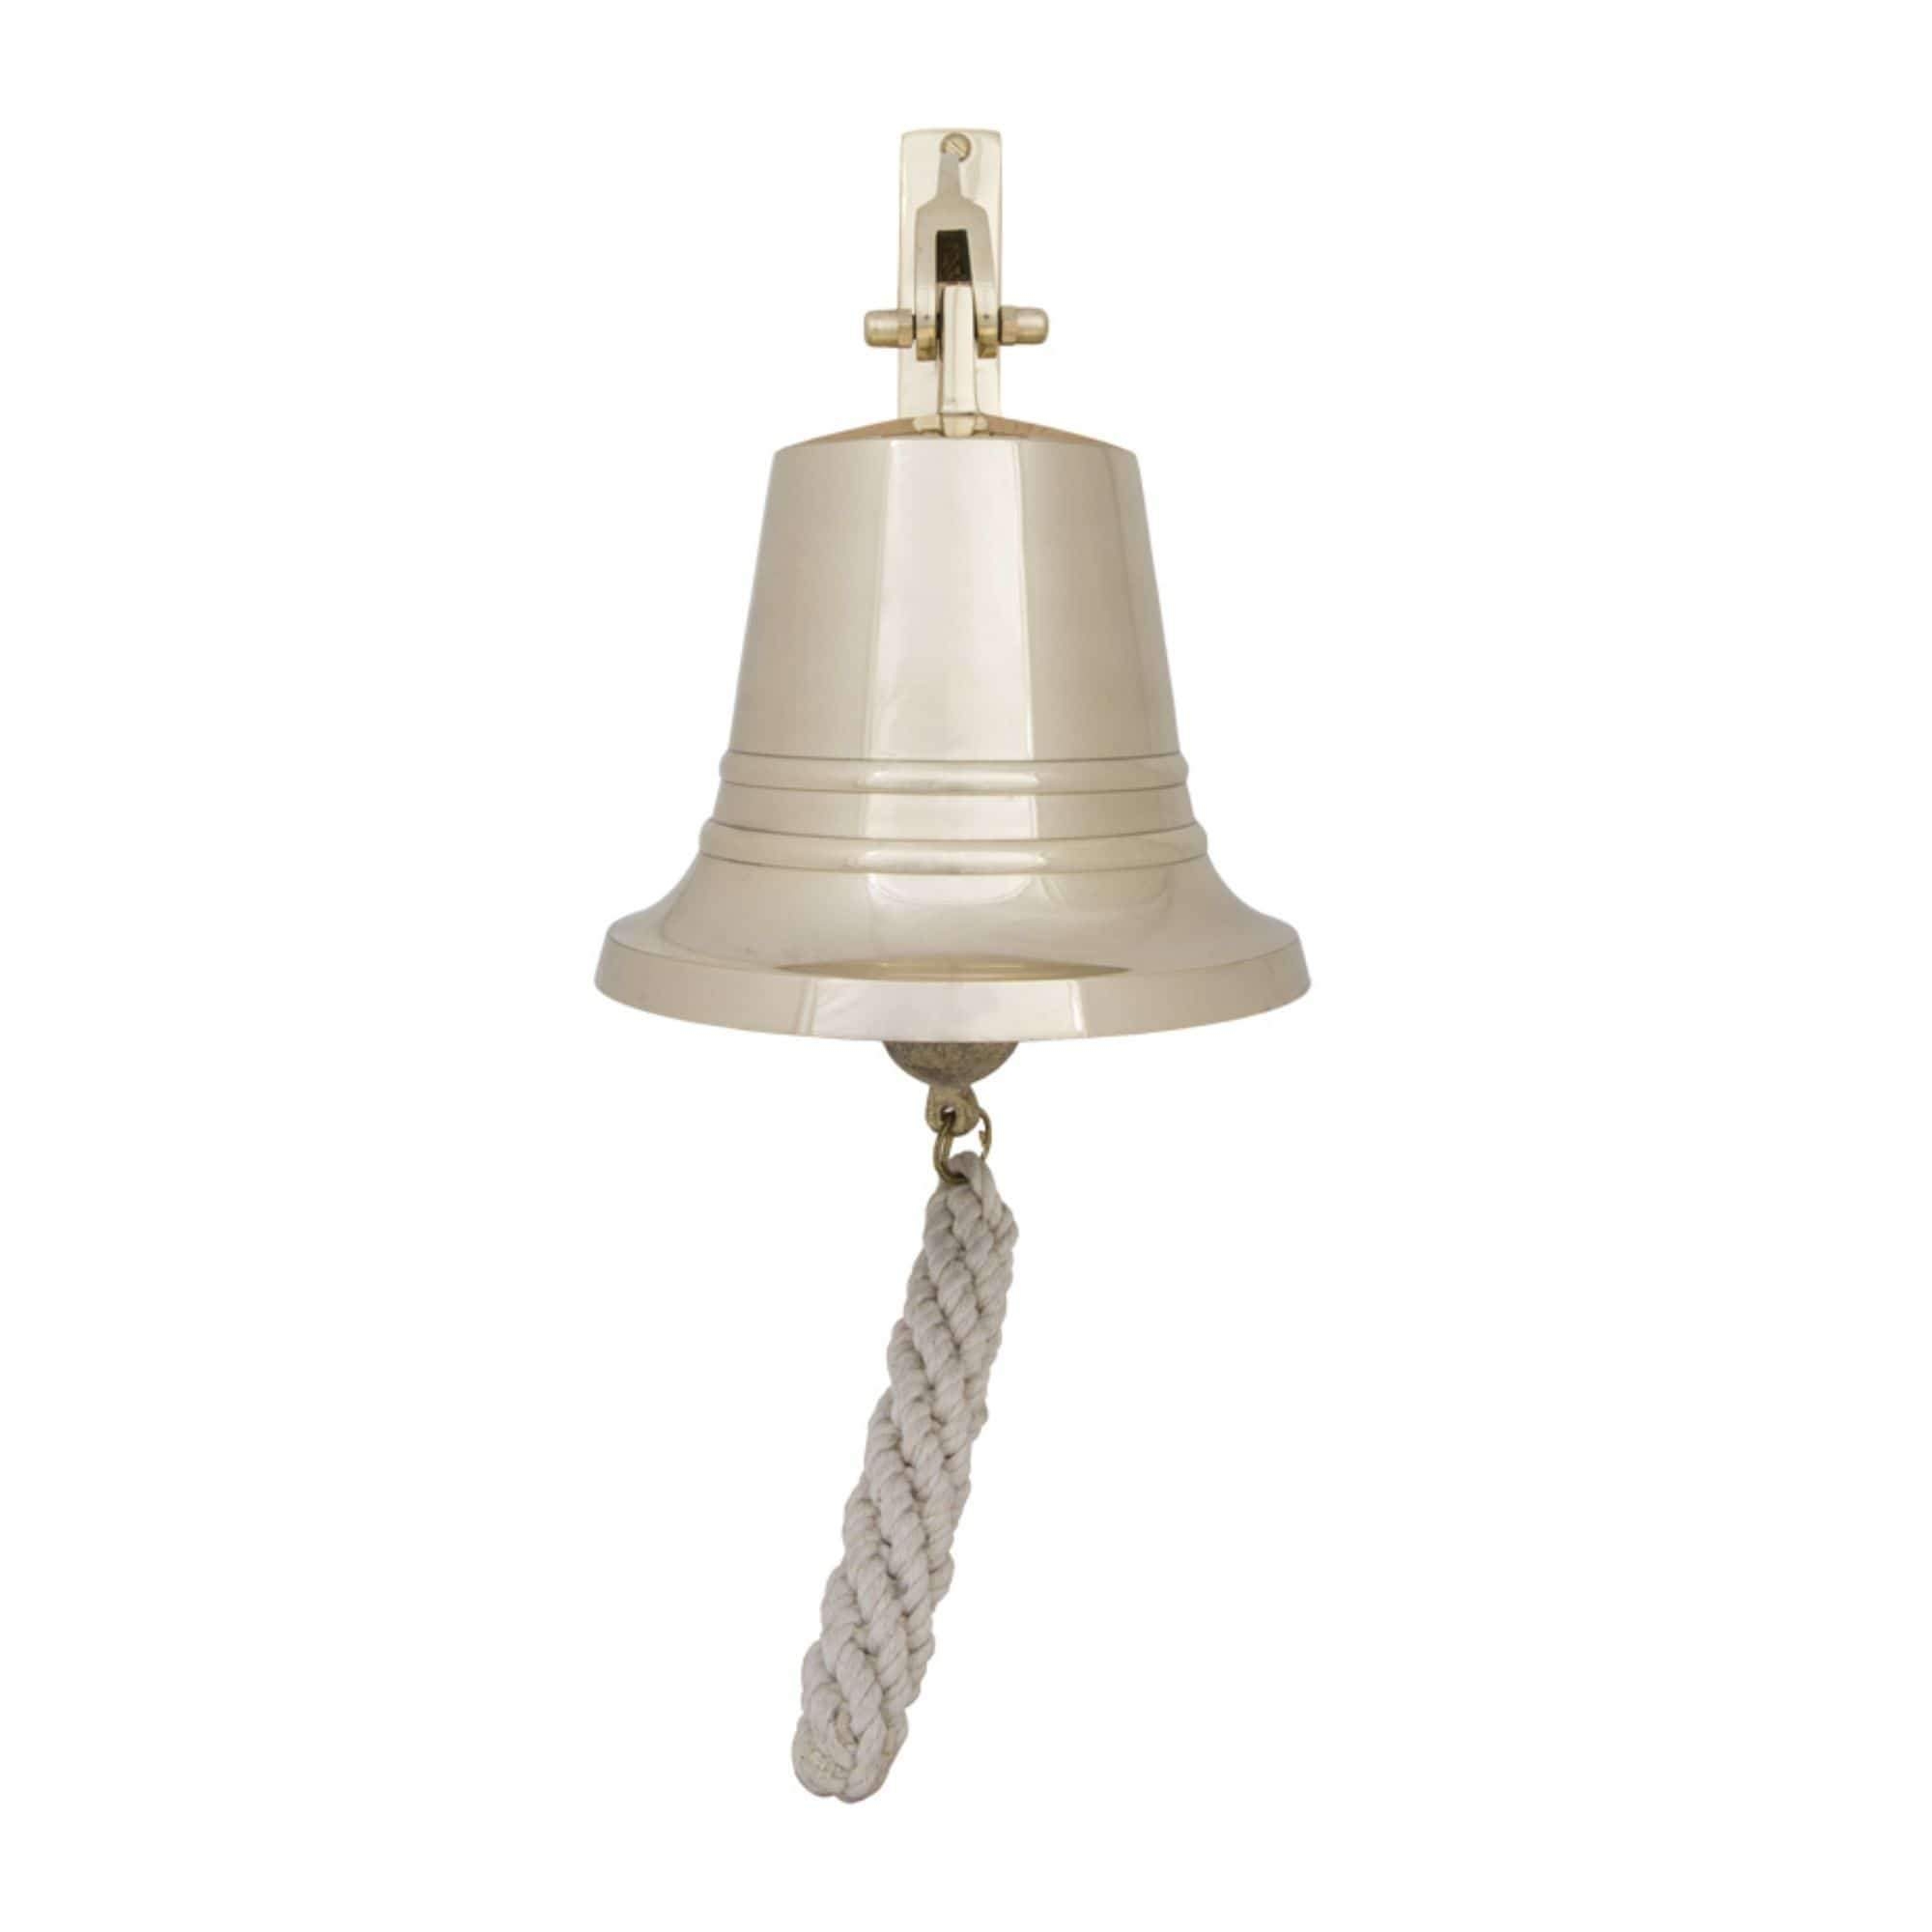 Bell – Solid Brass – 10 cm